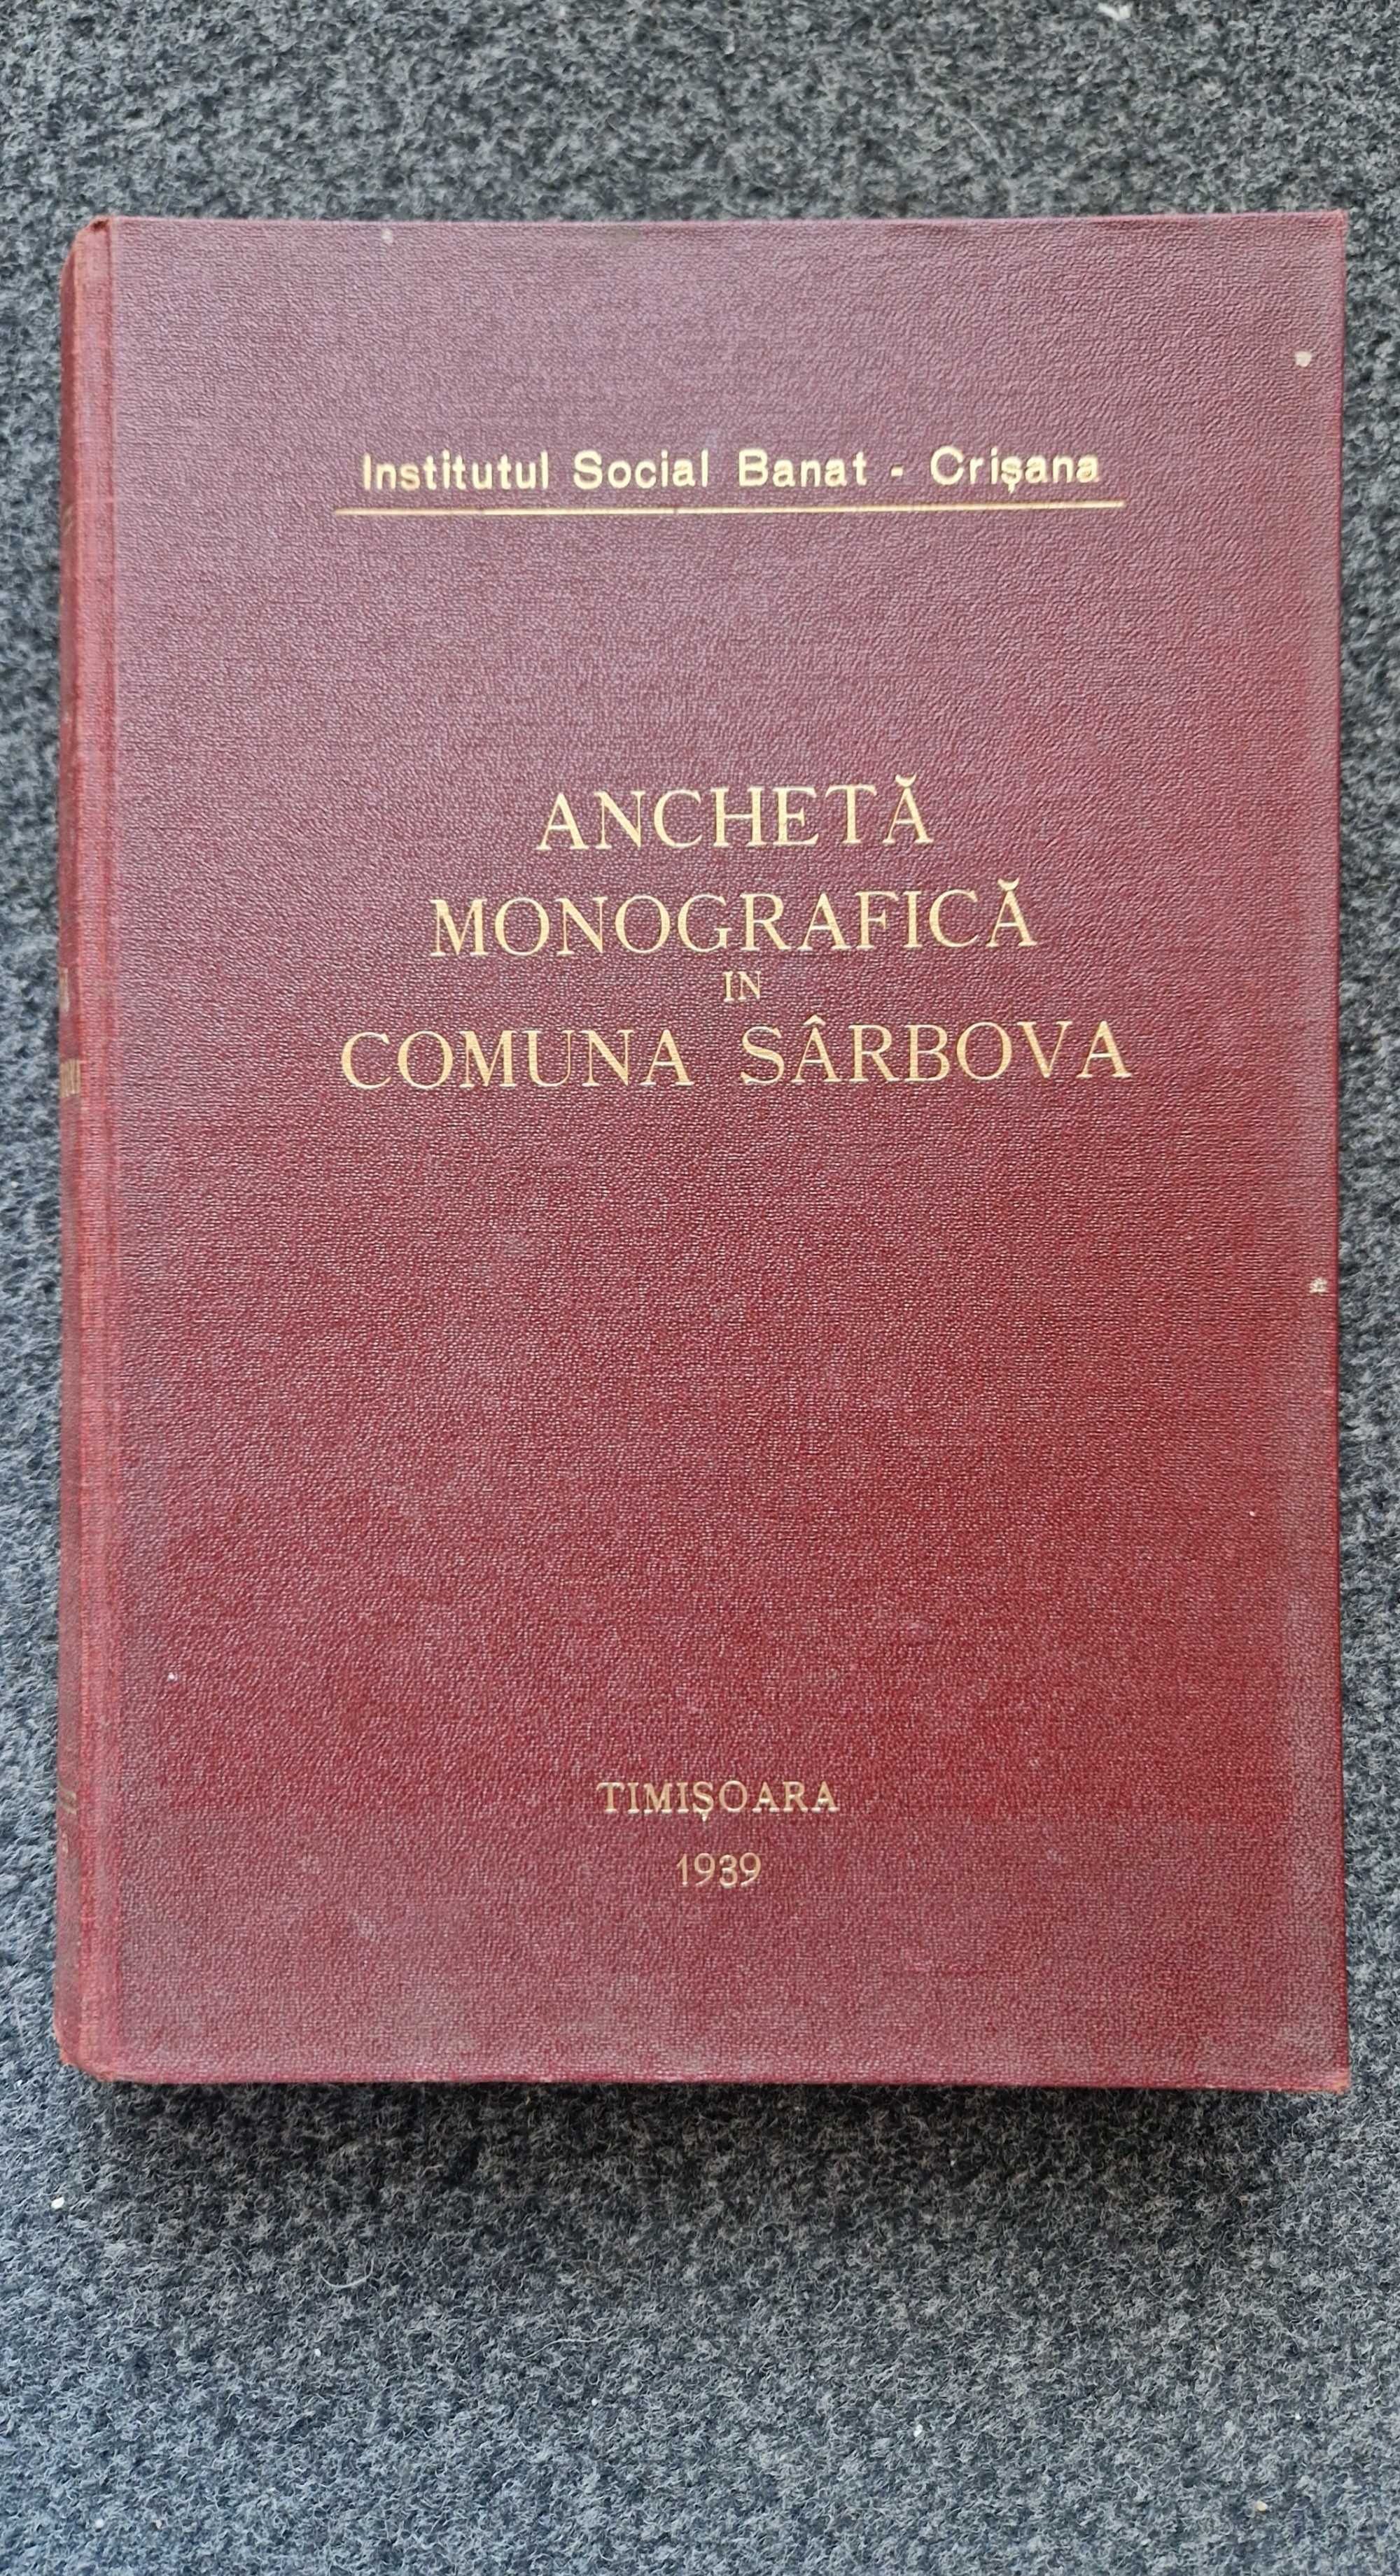 Ancheta Monografica in comuna Sarbova